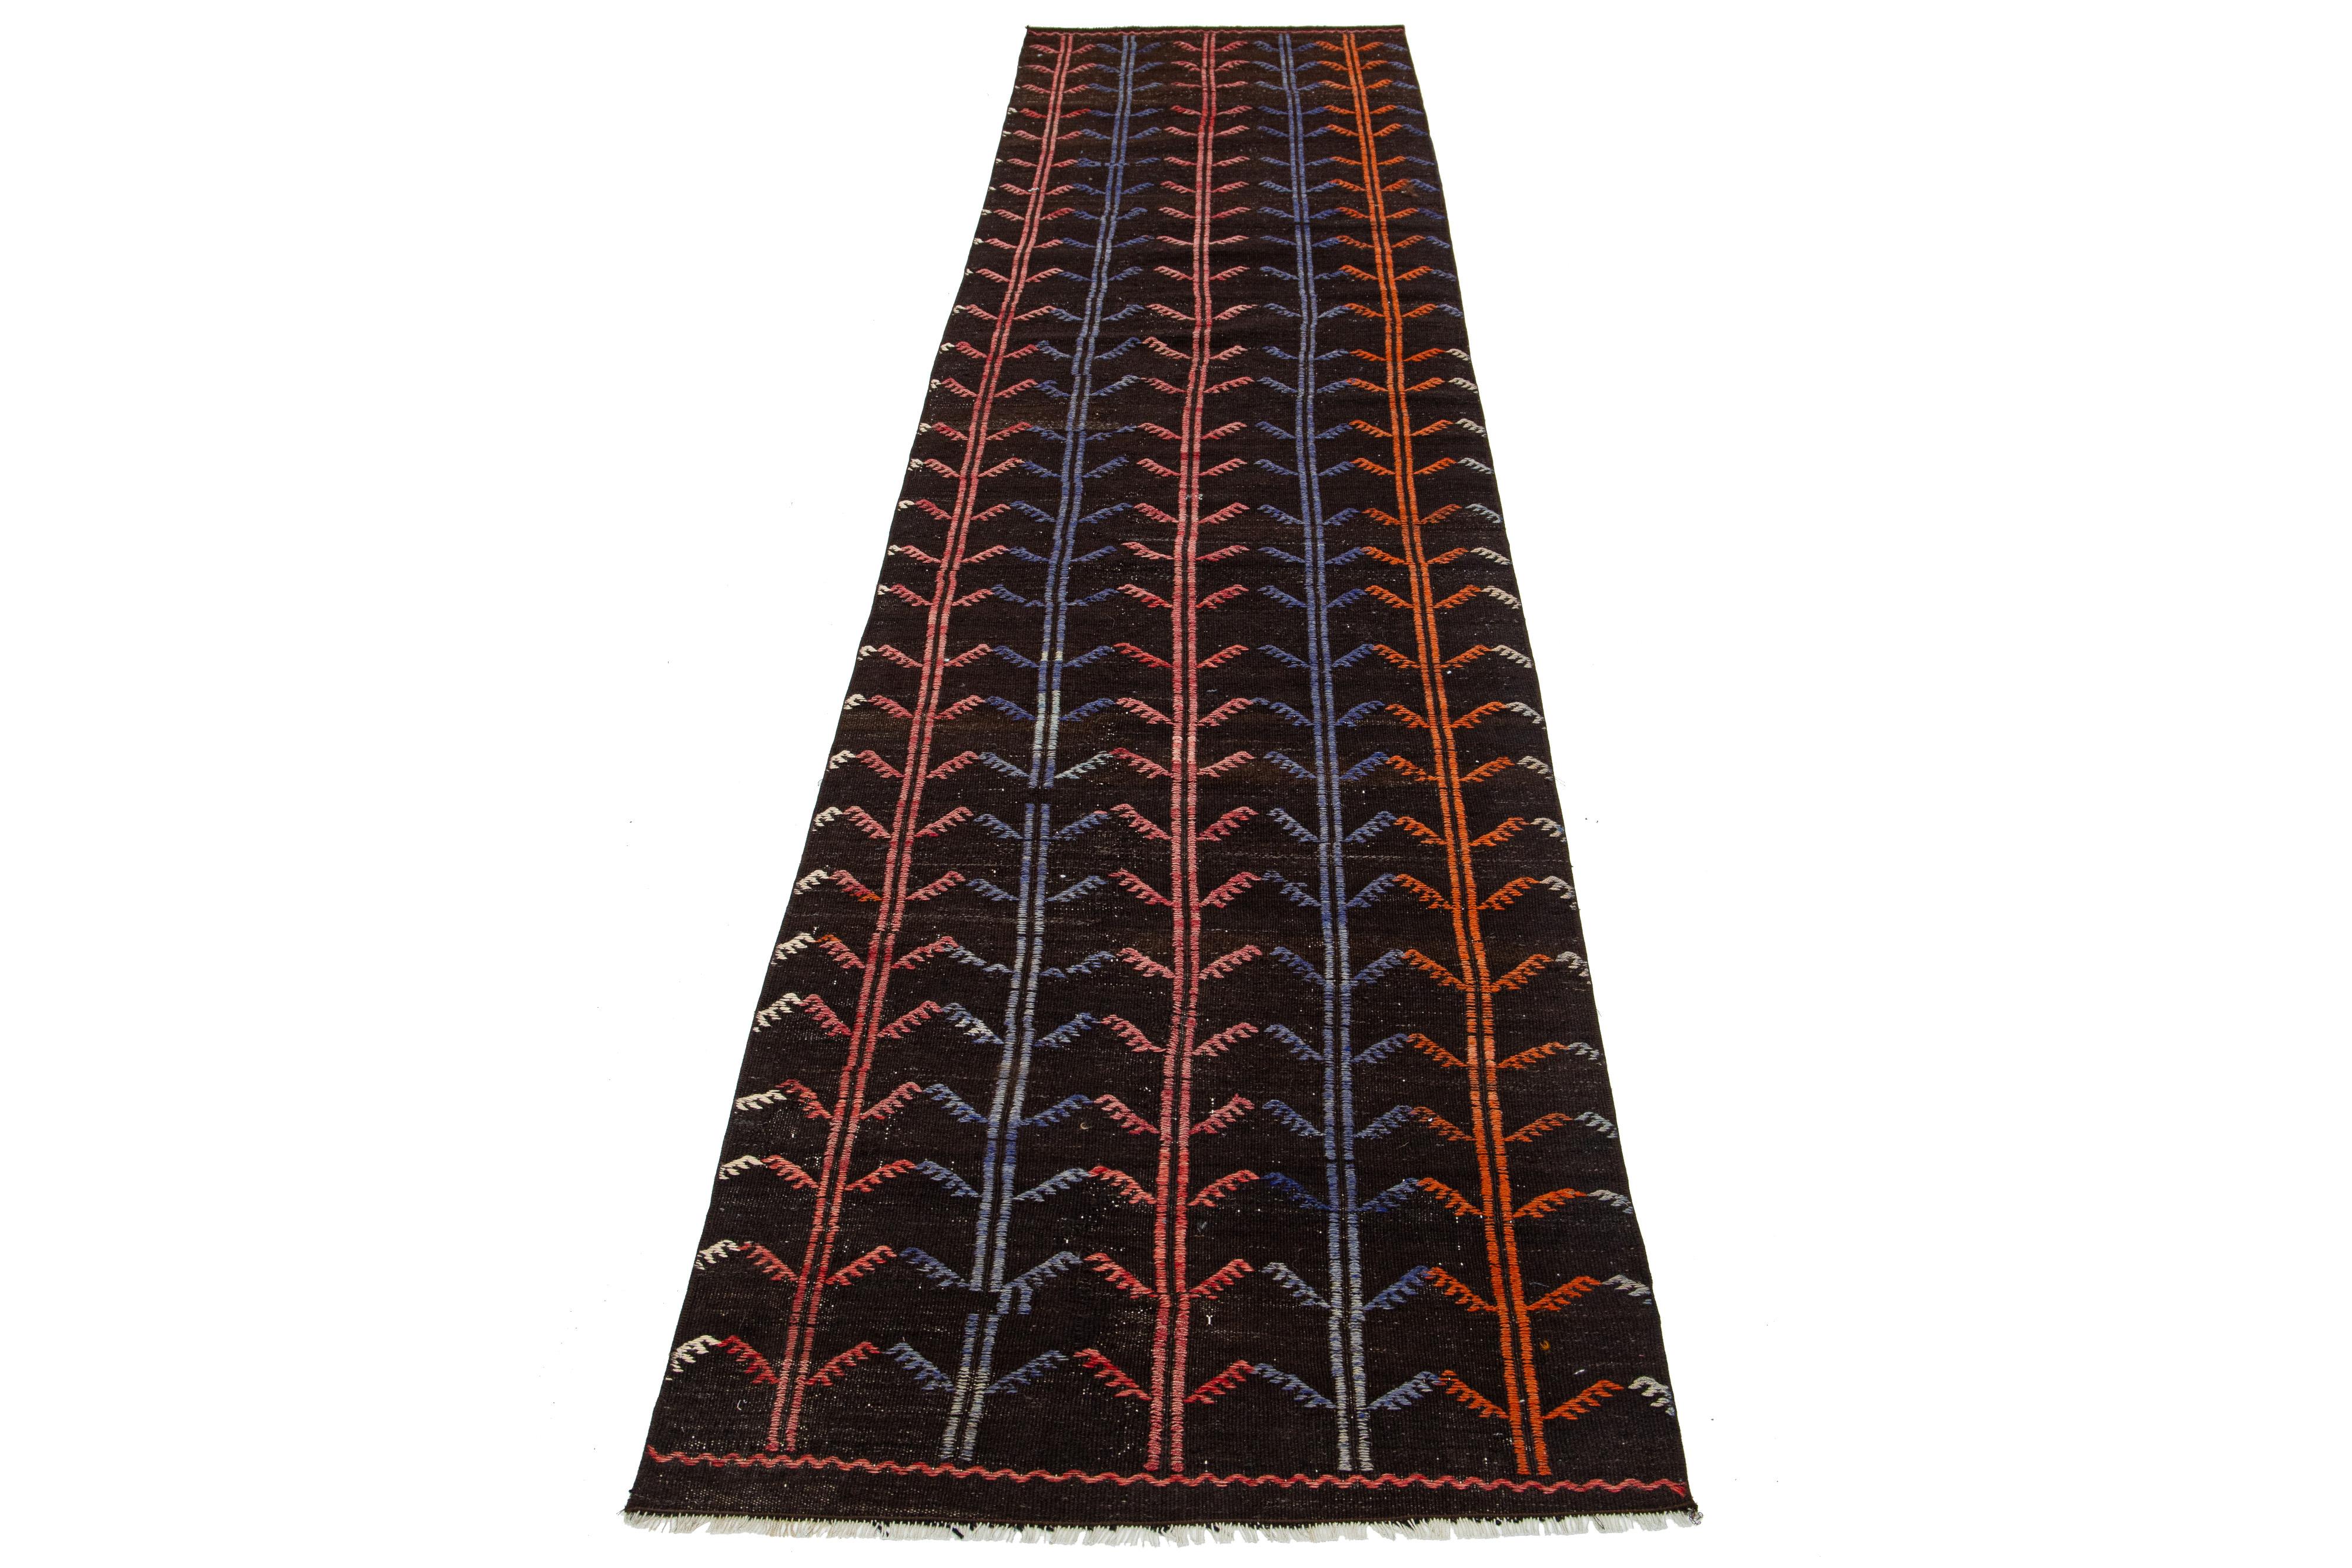 Ce magnifique tapis kilim en laine présente un étonnant design géométrique sur tout le pourtour, avec des accents multicolores vibrants sur un fond marron foncé.

Ce tapis mesure 2'10